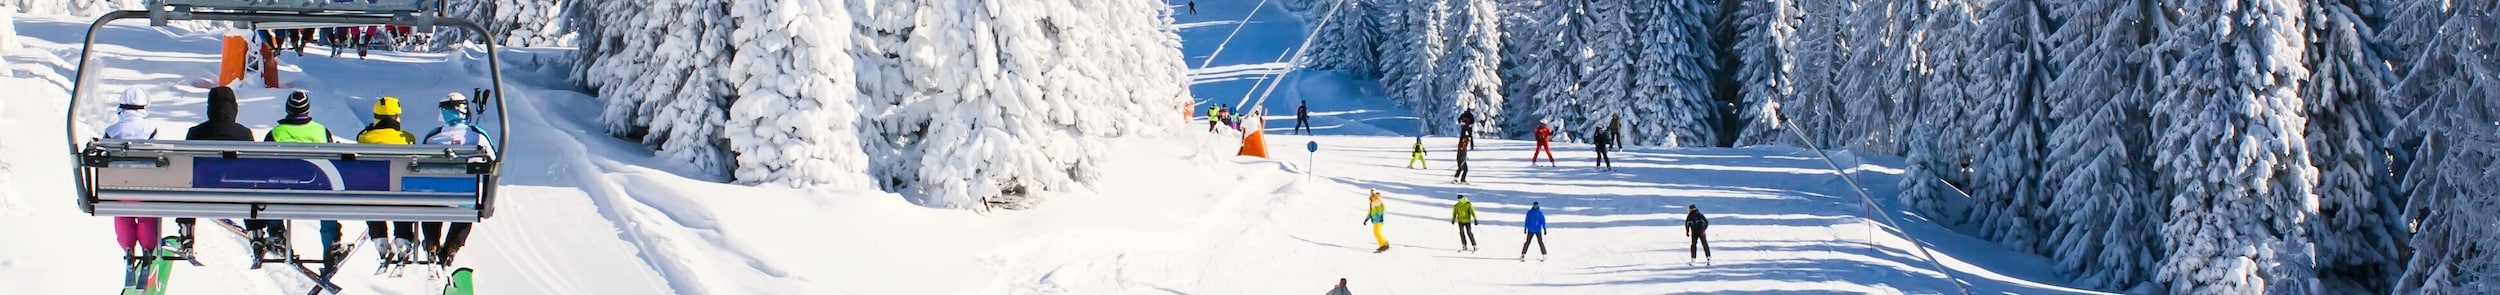 best-ski-resorts-near-binghamton-ny-maguire-kia